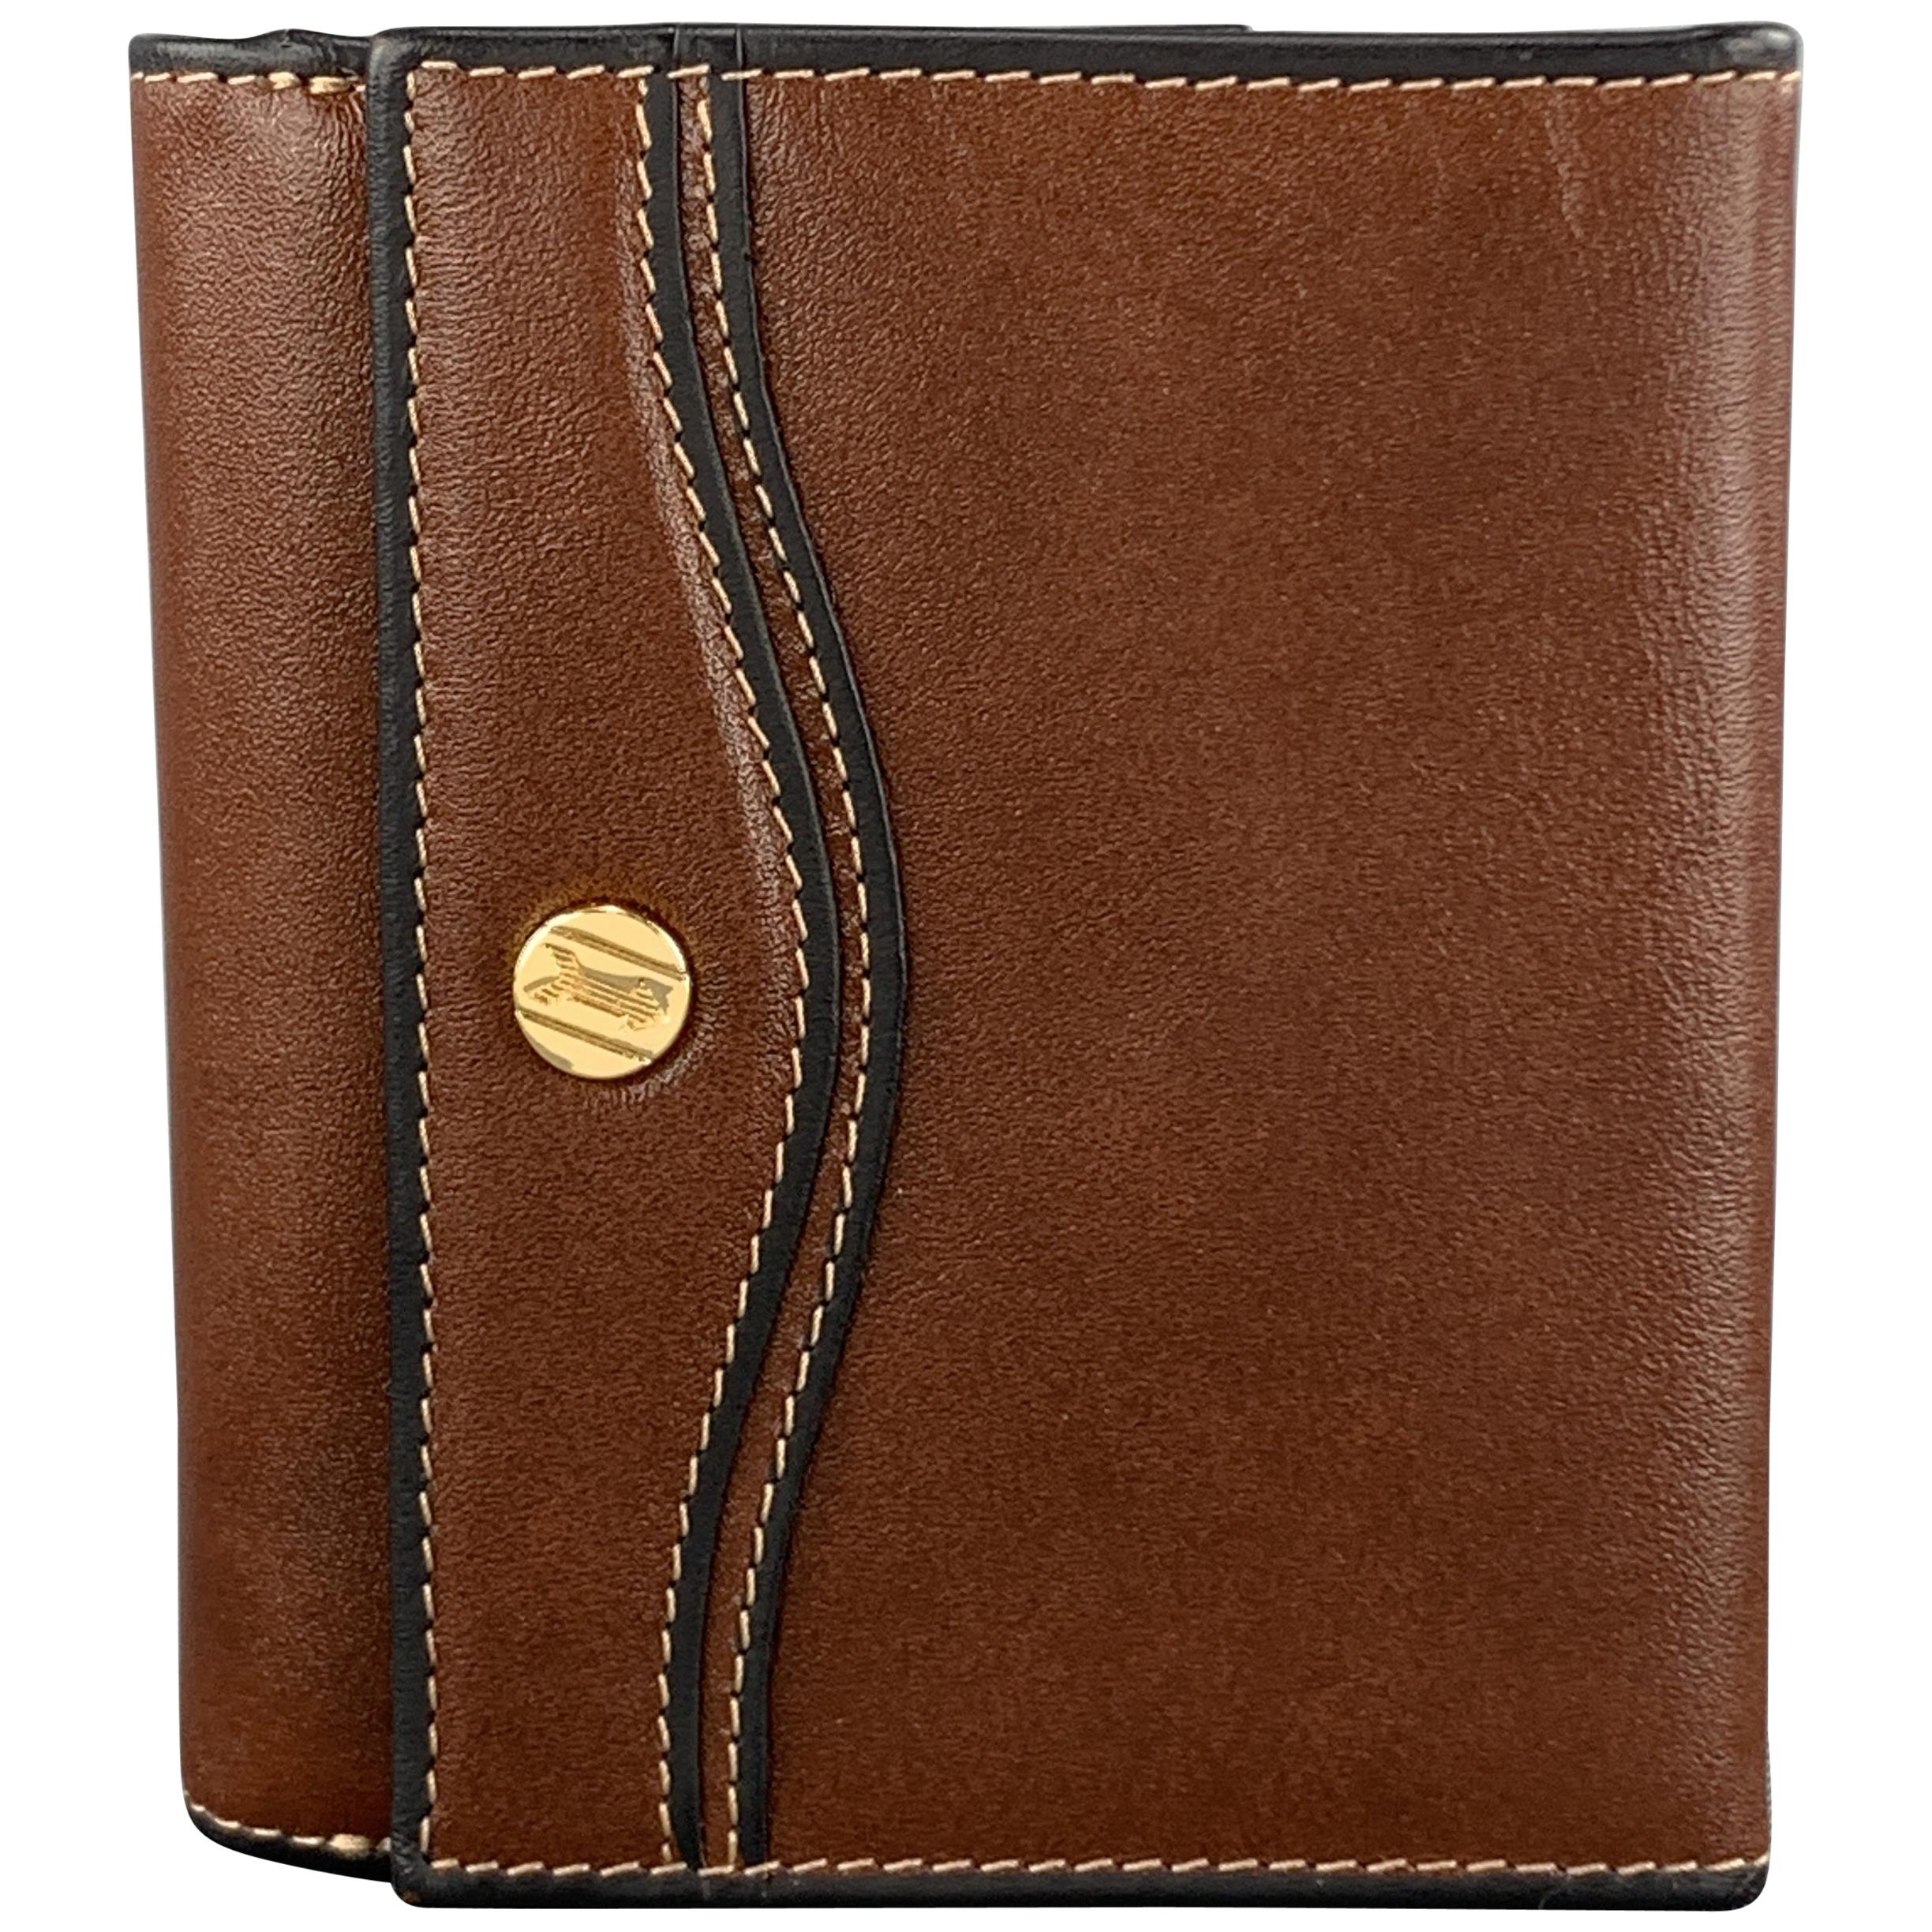 GOLDPFEIL Brown Leather Passport Holder Travel Wallet